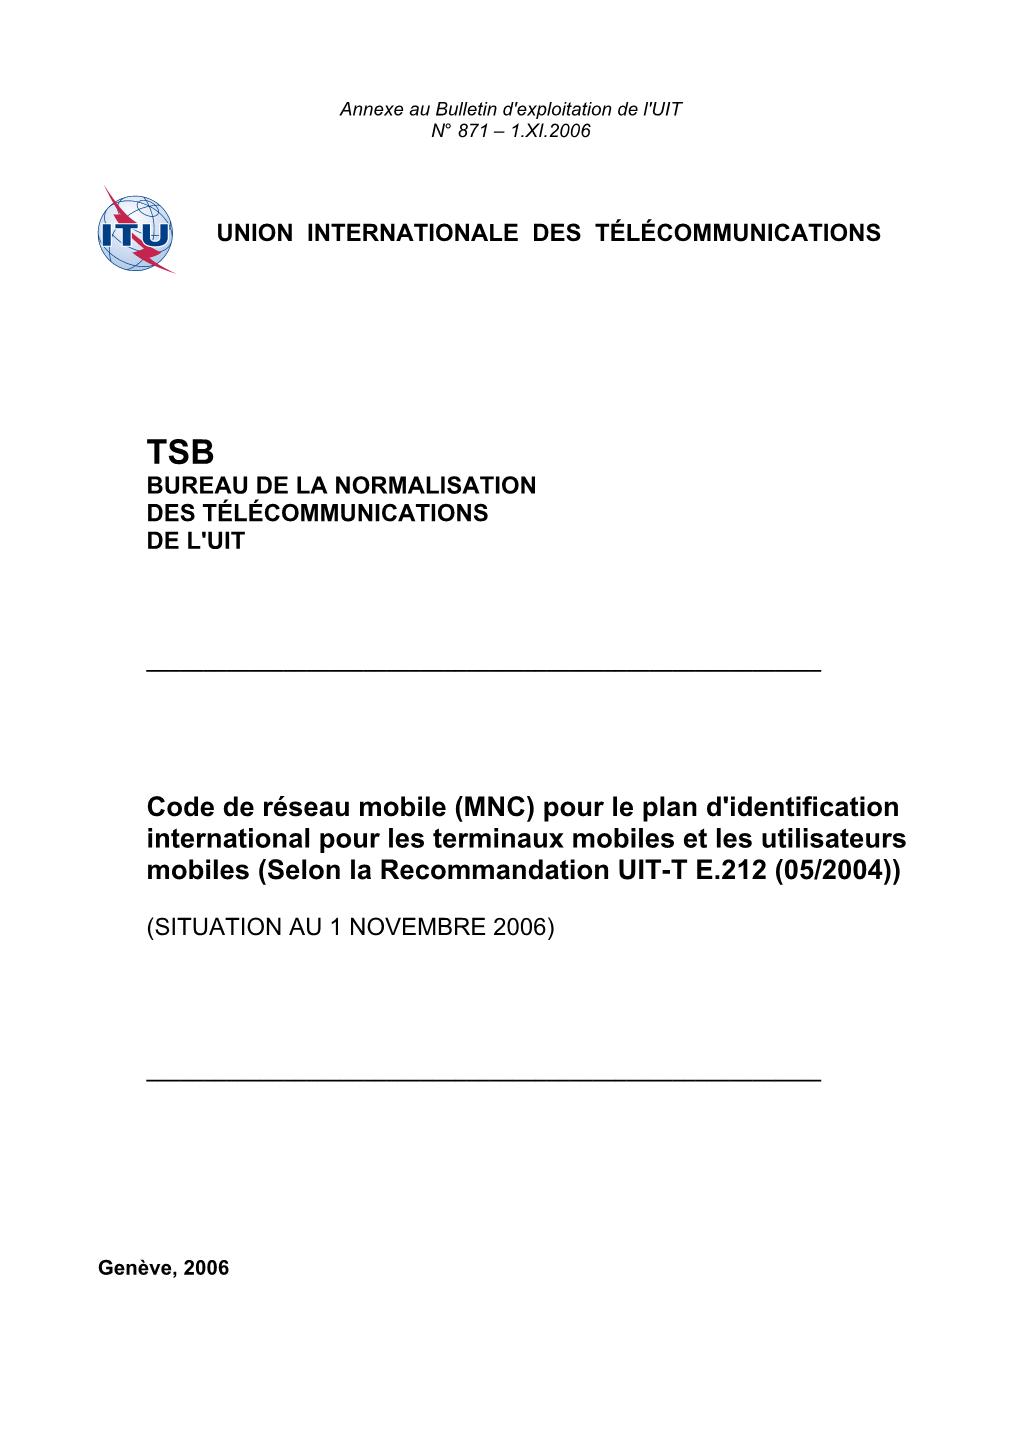 MNC) Pour Le Plan D'identification International Pour Les Terminaux Mobiles Et Les Utilisateurs Mobiles (Selon La Recommandation UIT-T E.212 (05/2004))